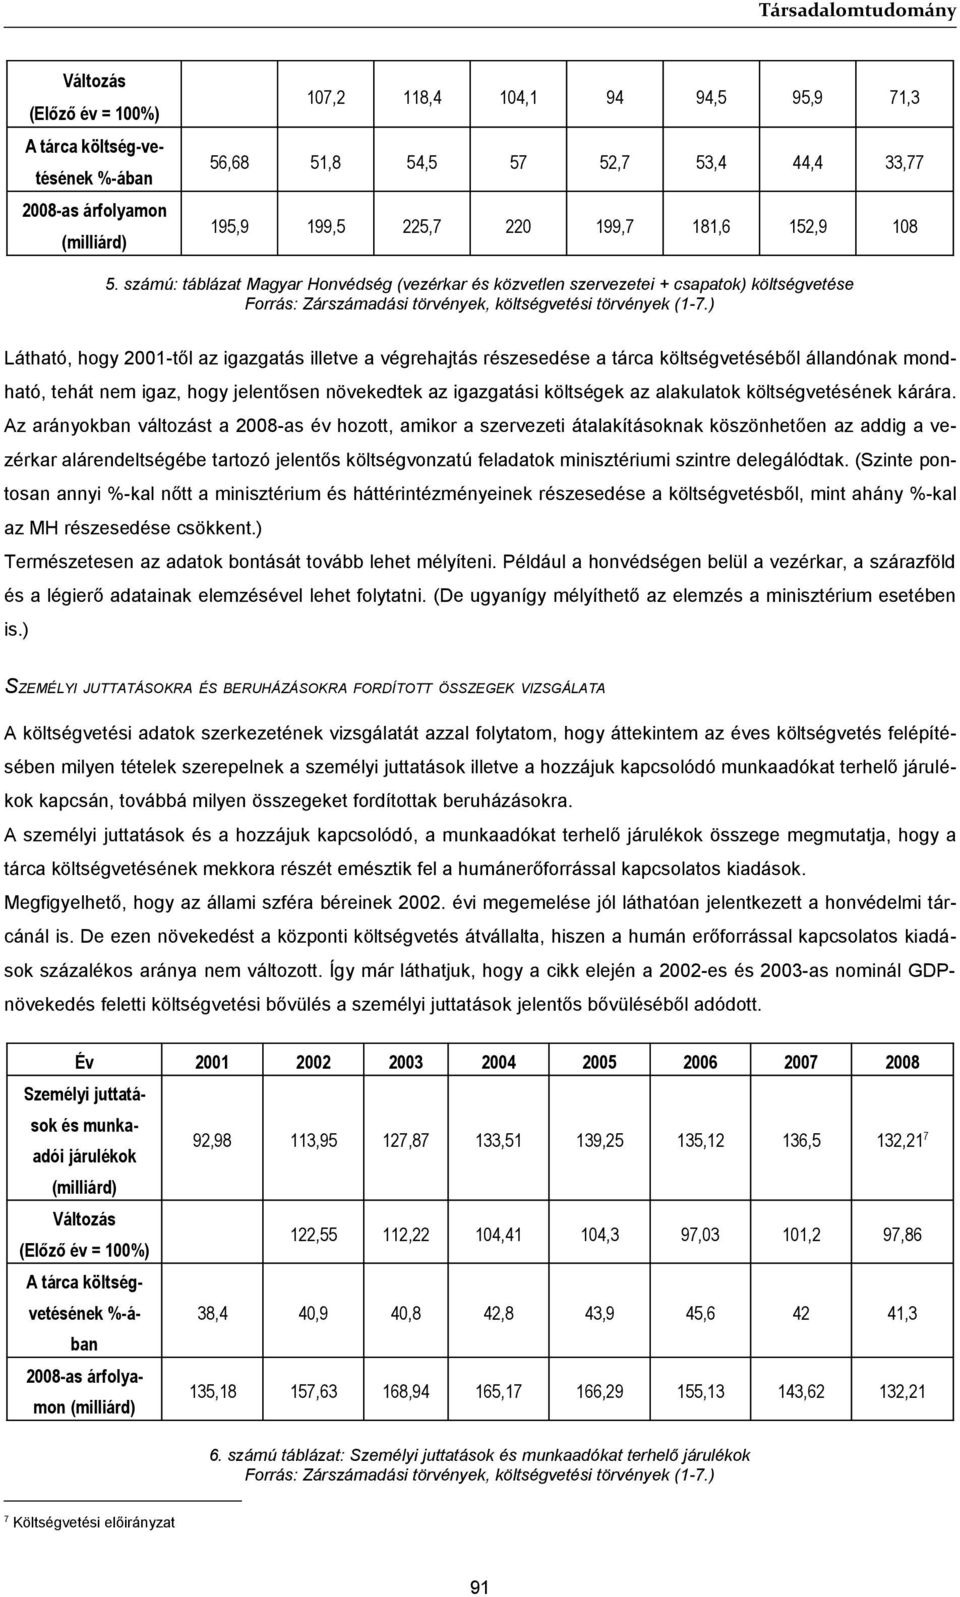 számú: táblázat Magyar Honvédség (vezérkar és közvetlen szervezetei + csapatok) költségvetése Látható, hogy 2001-től az igazgatás illetve a végrehajtás részesedése a tárca költségvetéséből állandónak